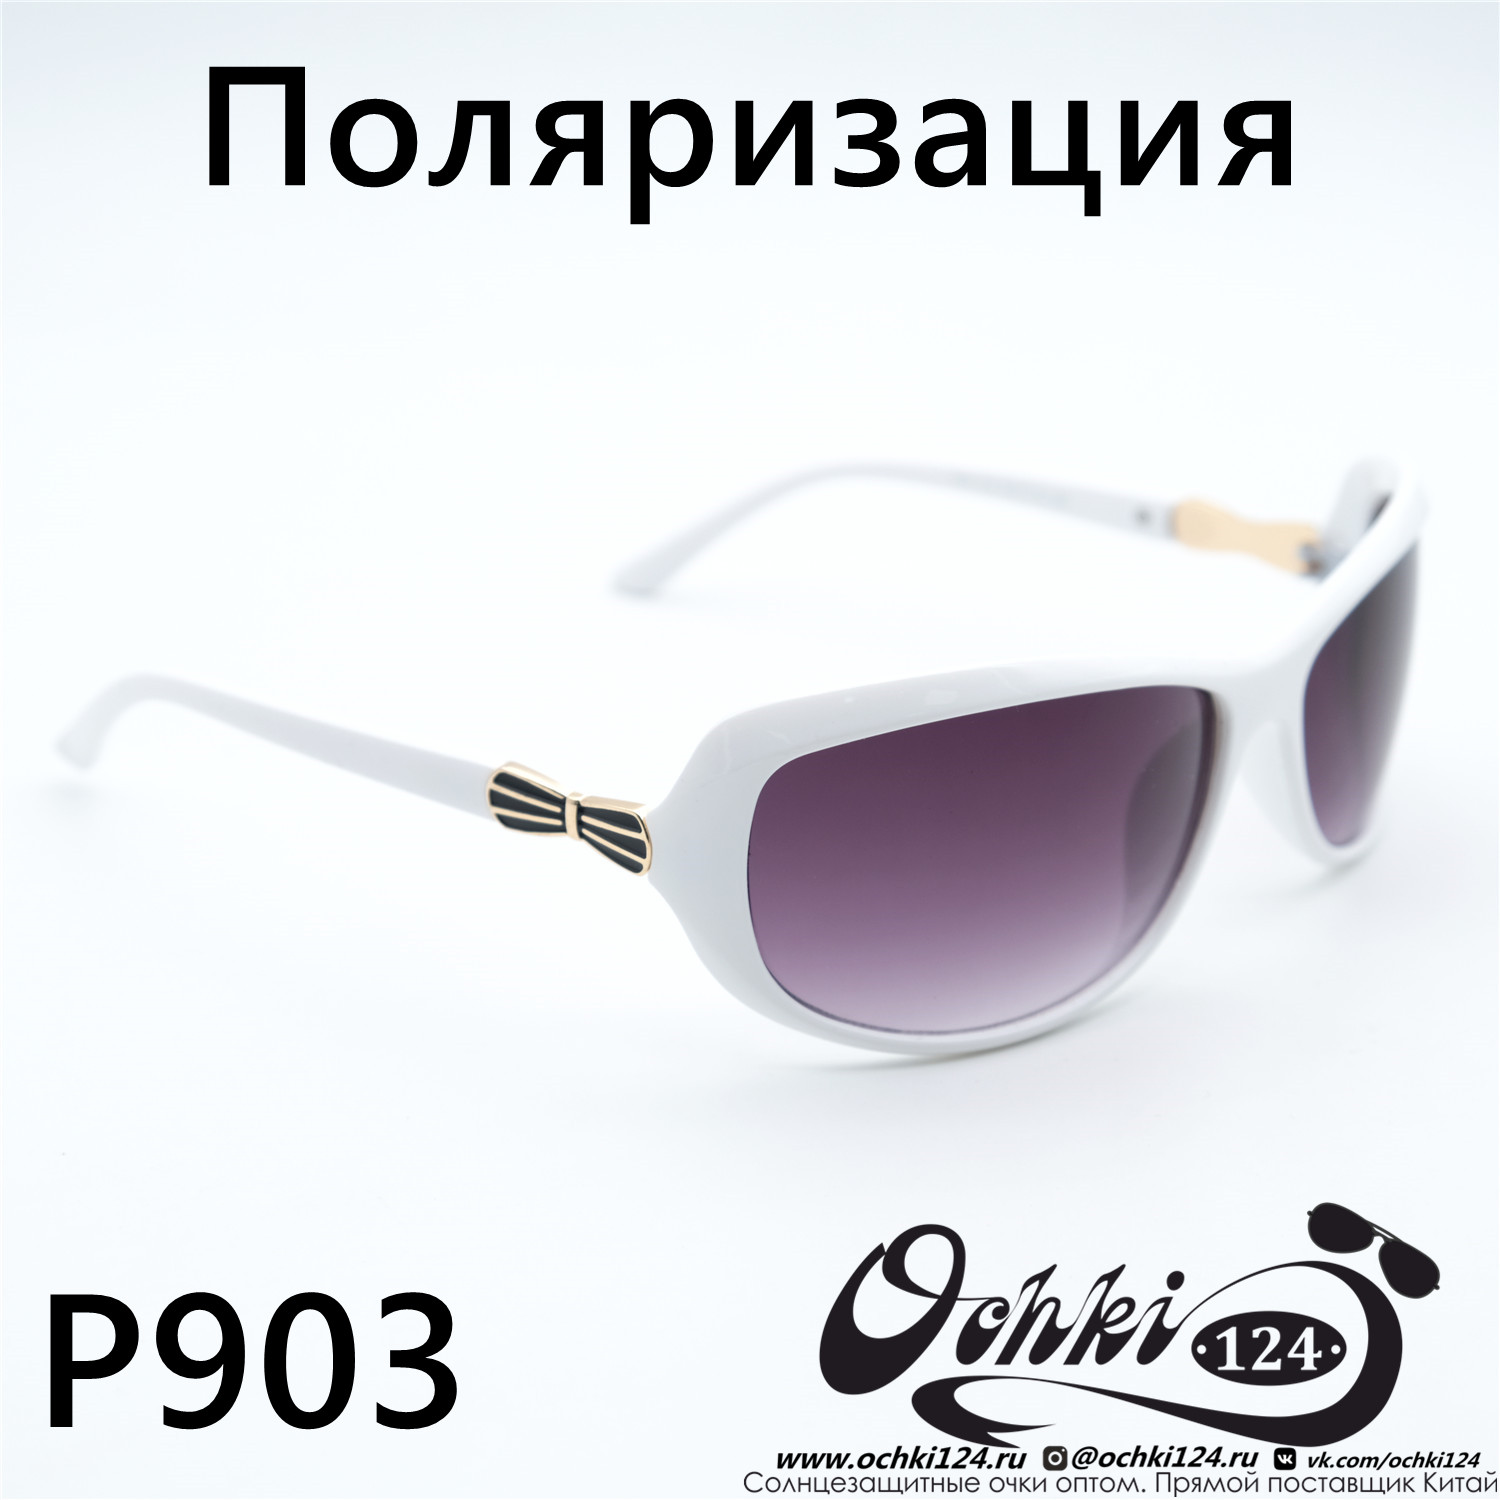  Солнцезащитные очки картинка Женские Prius Polarized Стандартные P903-C6 